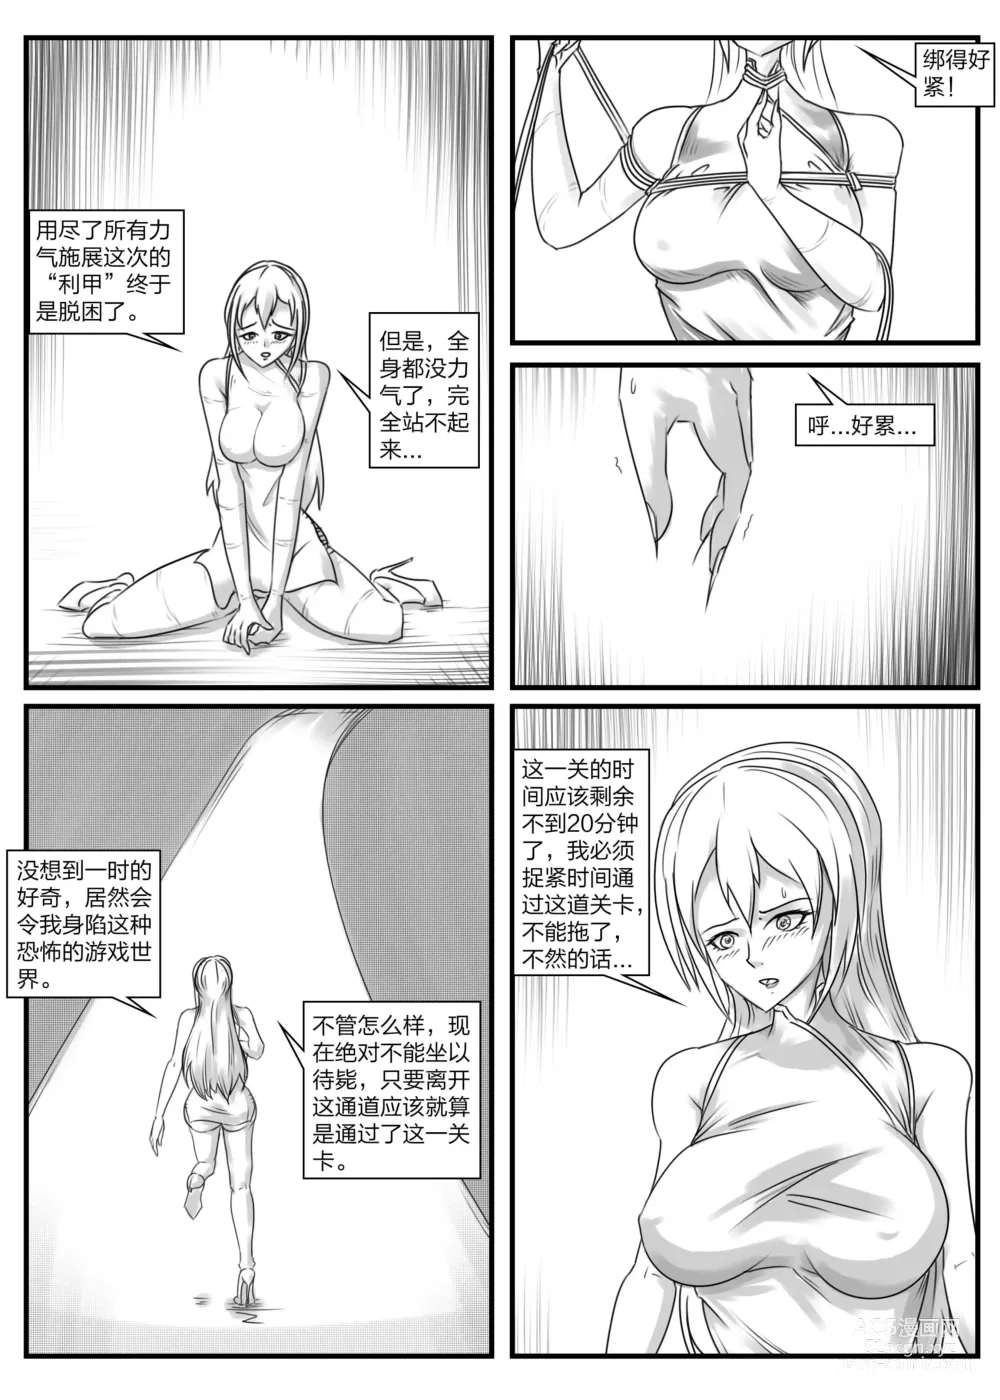 Page 3 of doujinshi 《被困游戏世界2》